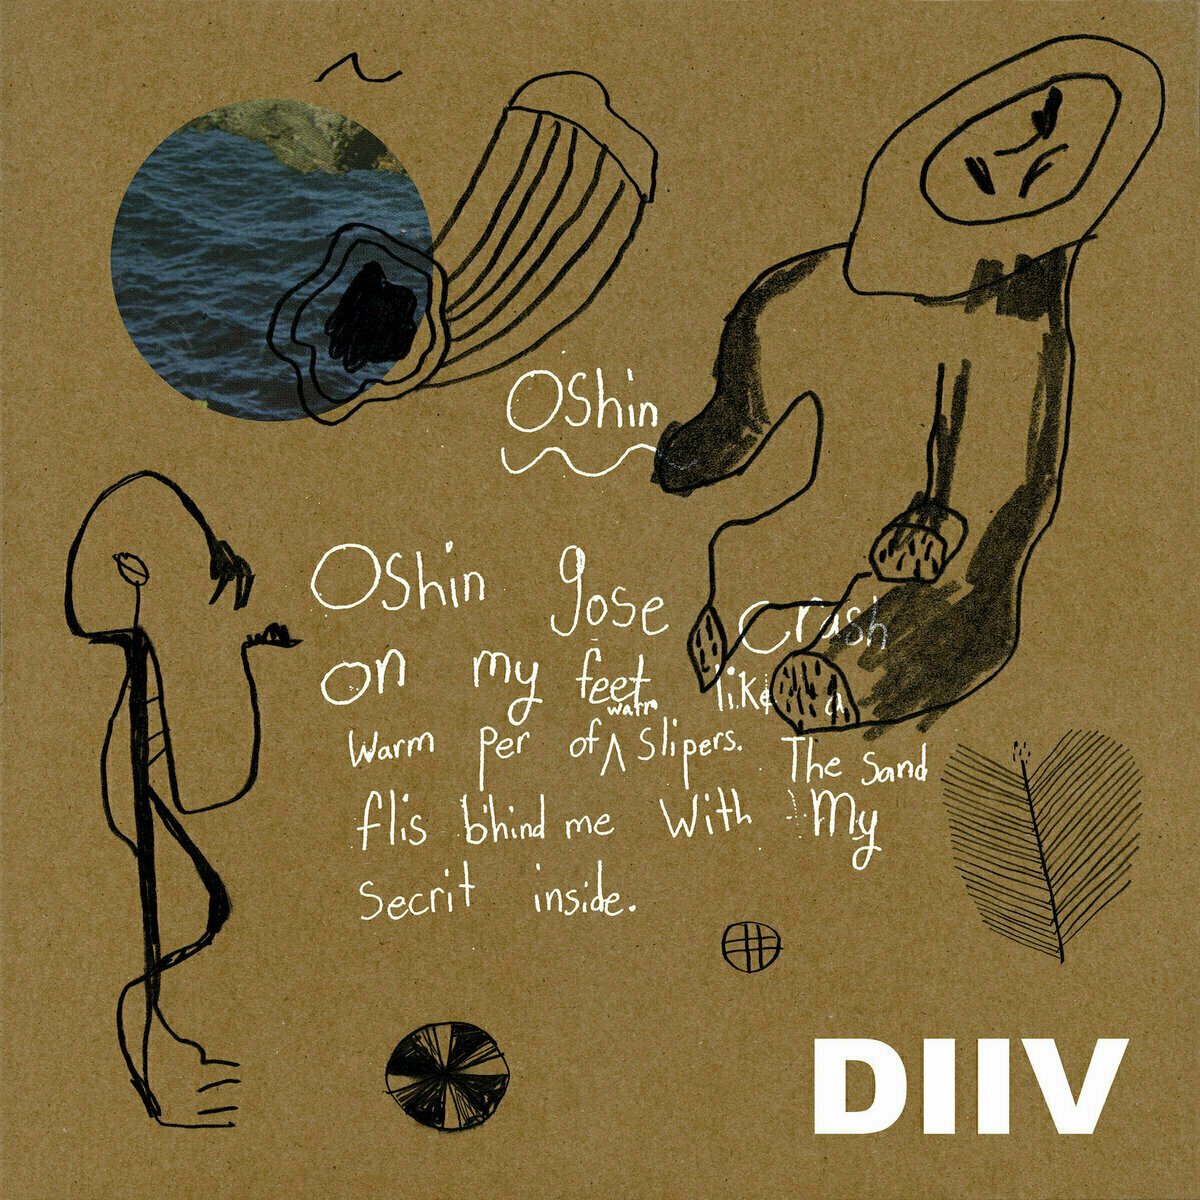 Schallplatte Diiv - Oshin - 10th Anniversary (Reissue) (Blue Vinyl) (2 LP)